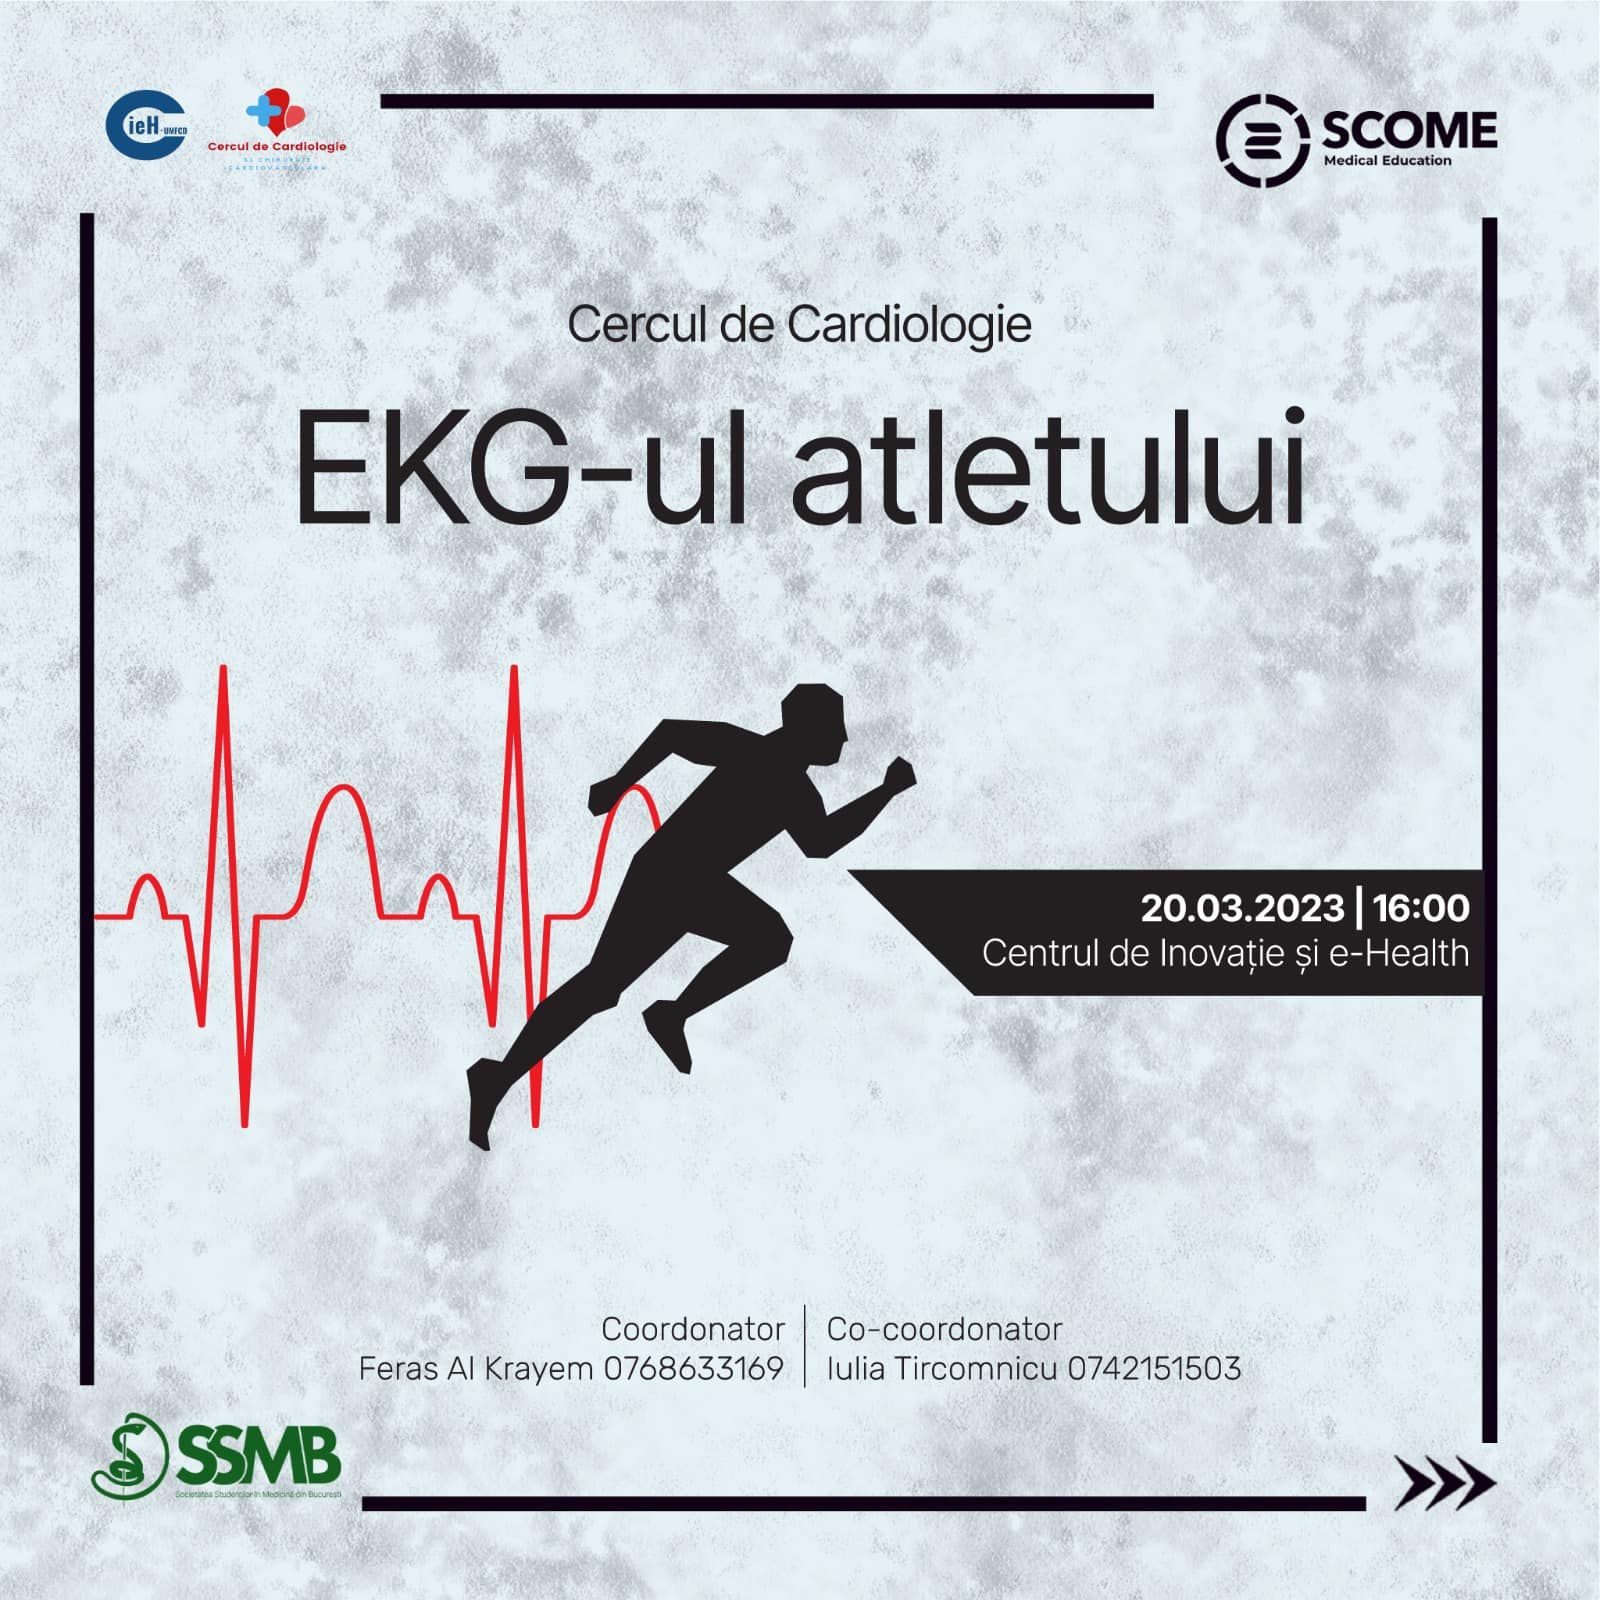 EKG-ul atletului, un nou eveniment organizat de Cercul de Cardiologie